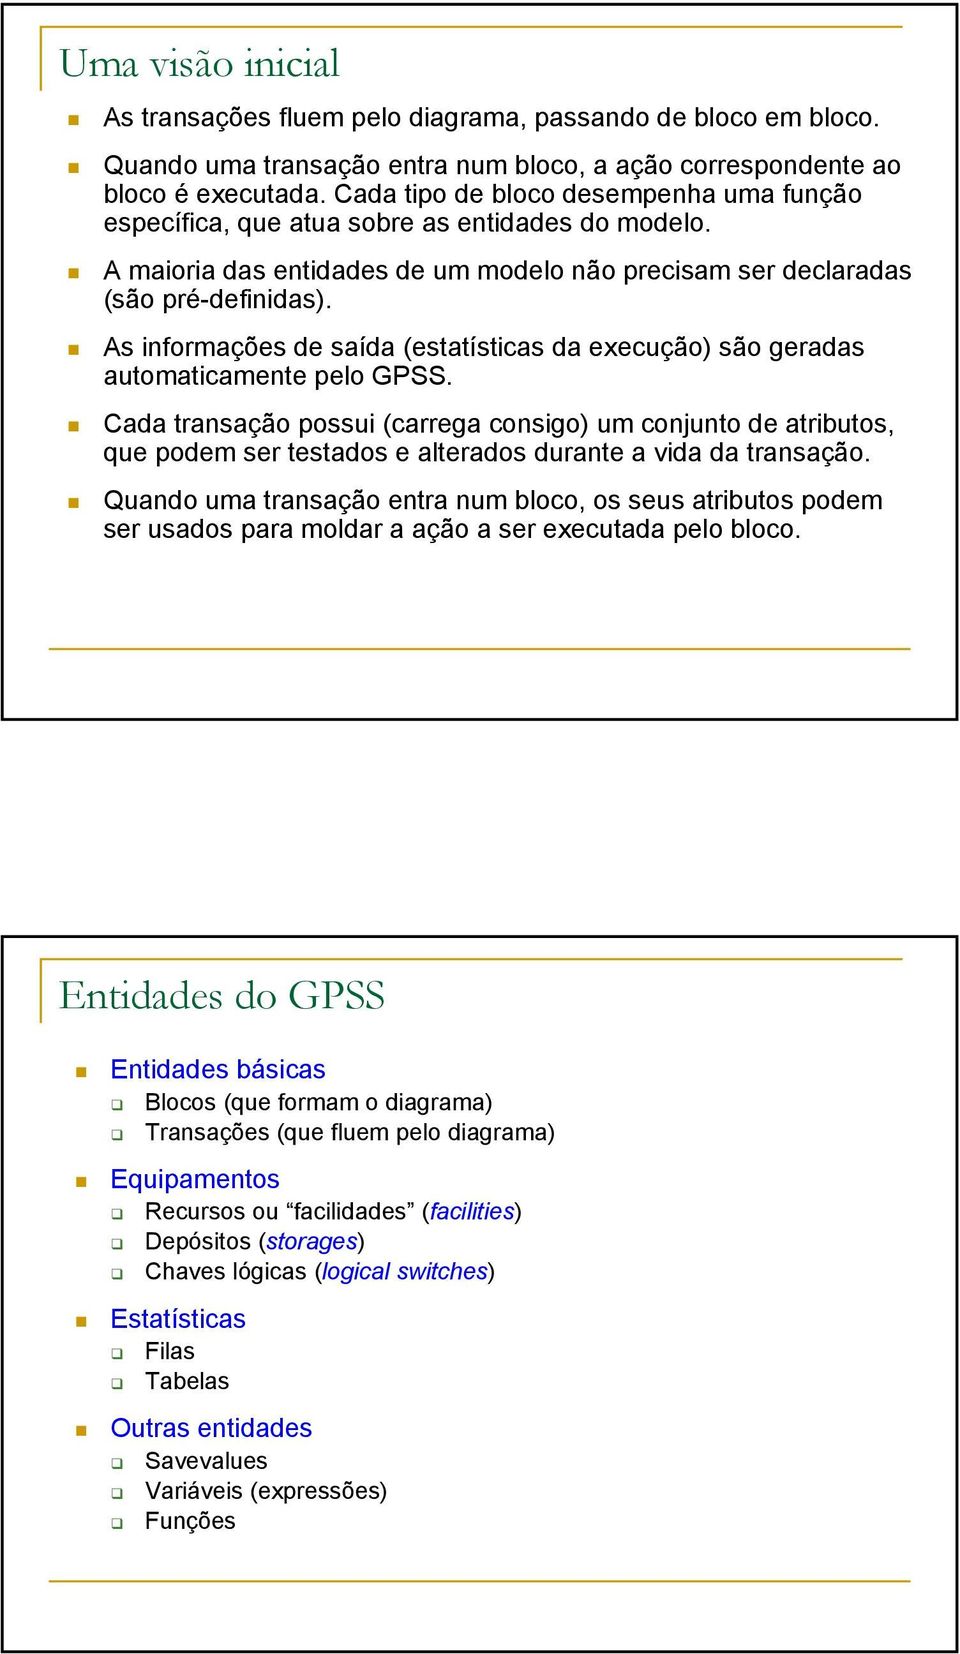 As informações de saída (estatísticas da execução) são geradas automaticamente pelo GPSS.